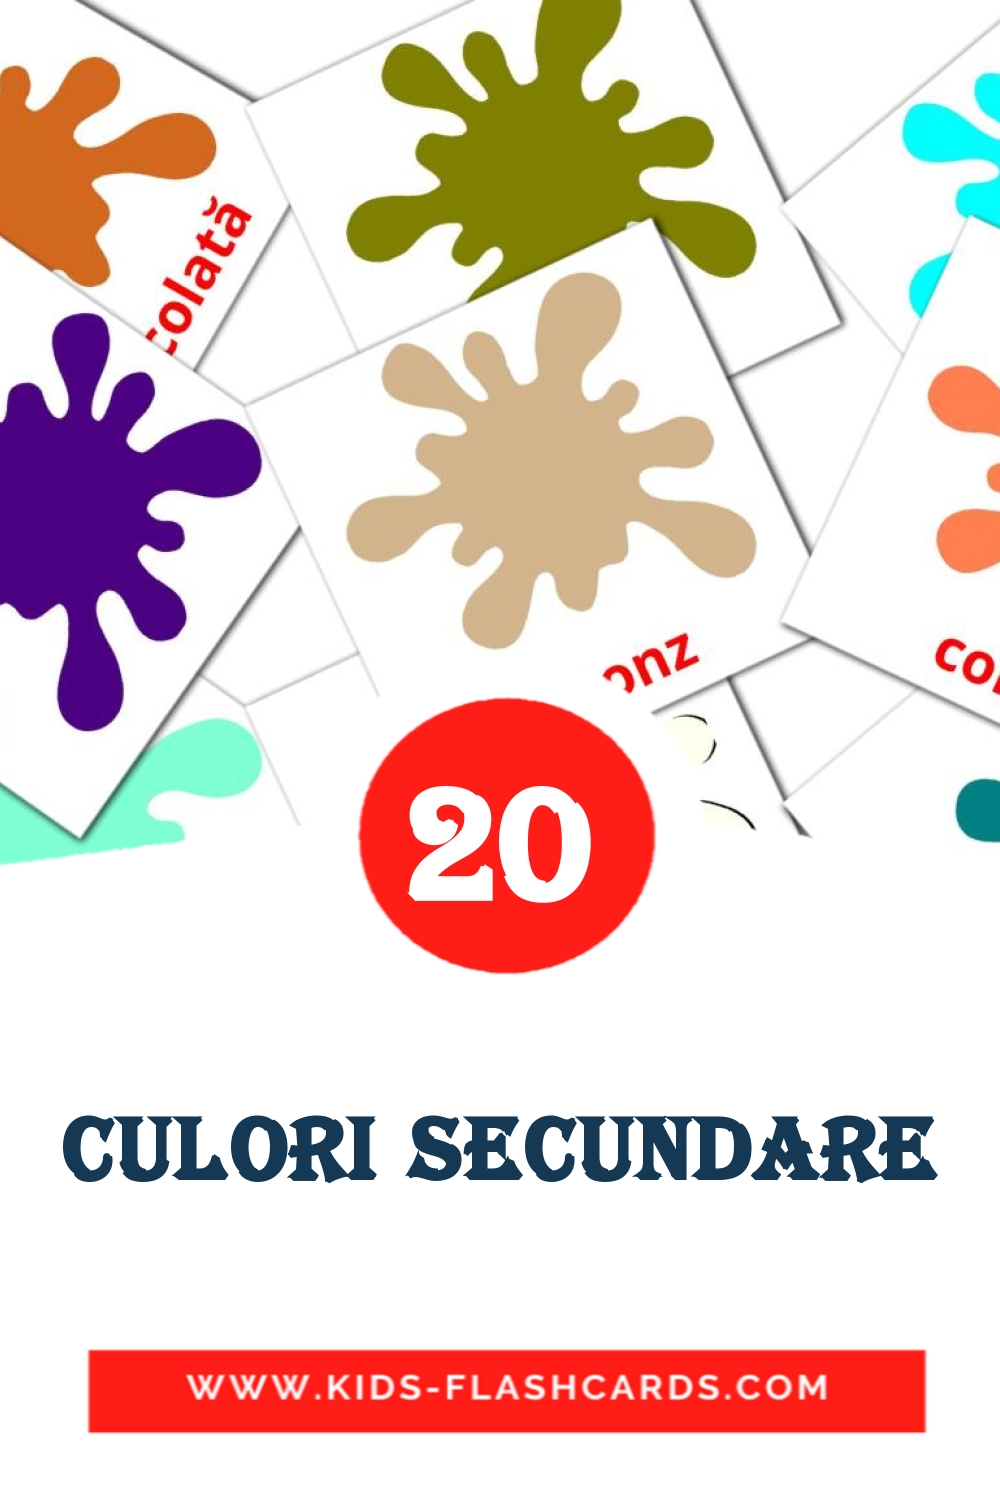 Culori secundare на румынском для Детского Сада (20 карточек)